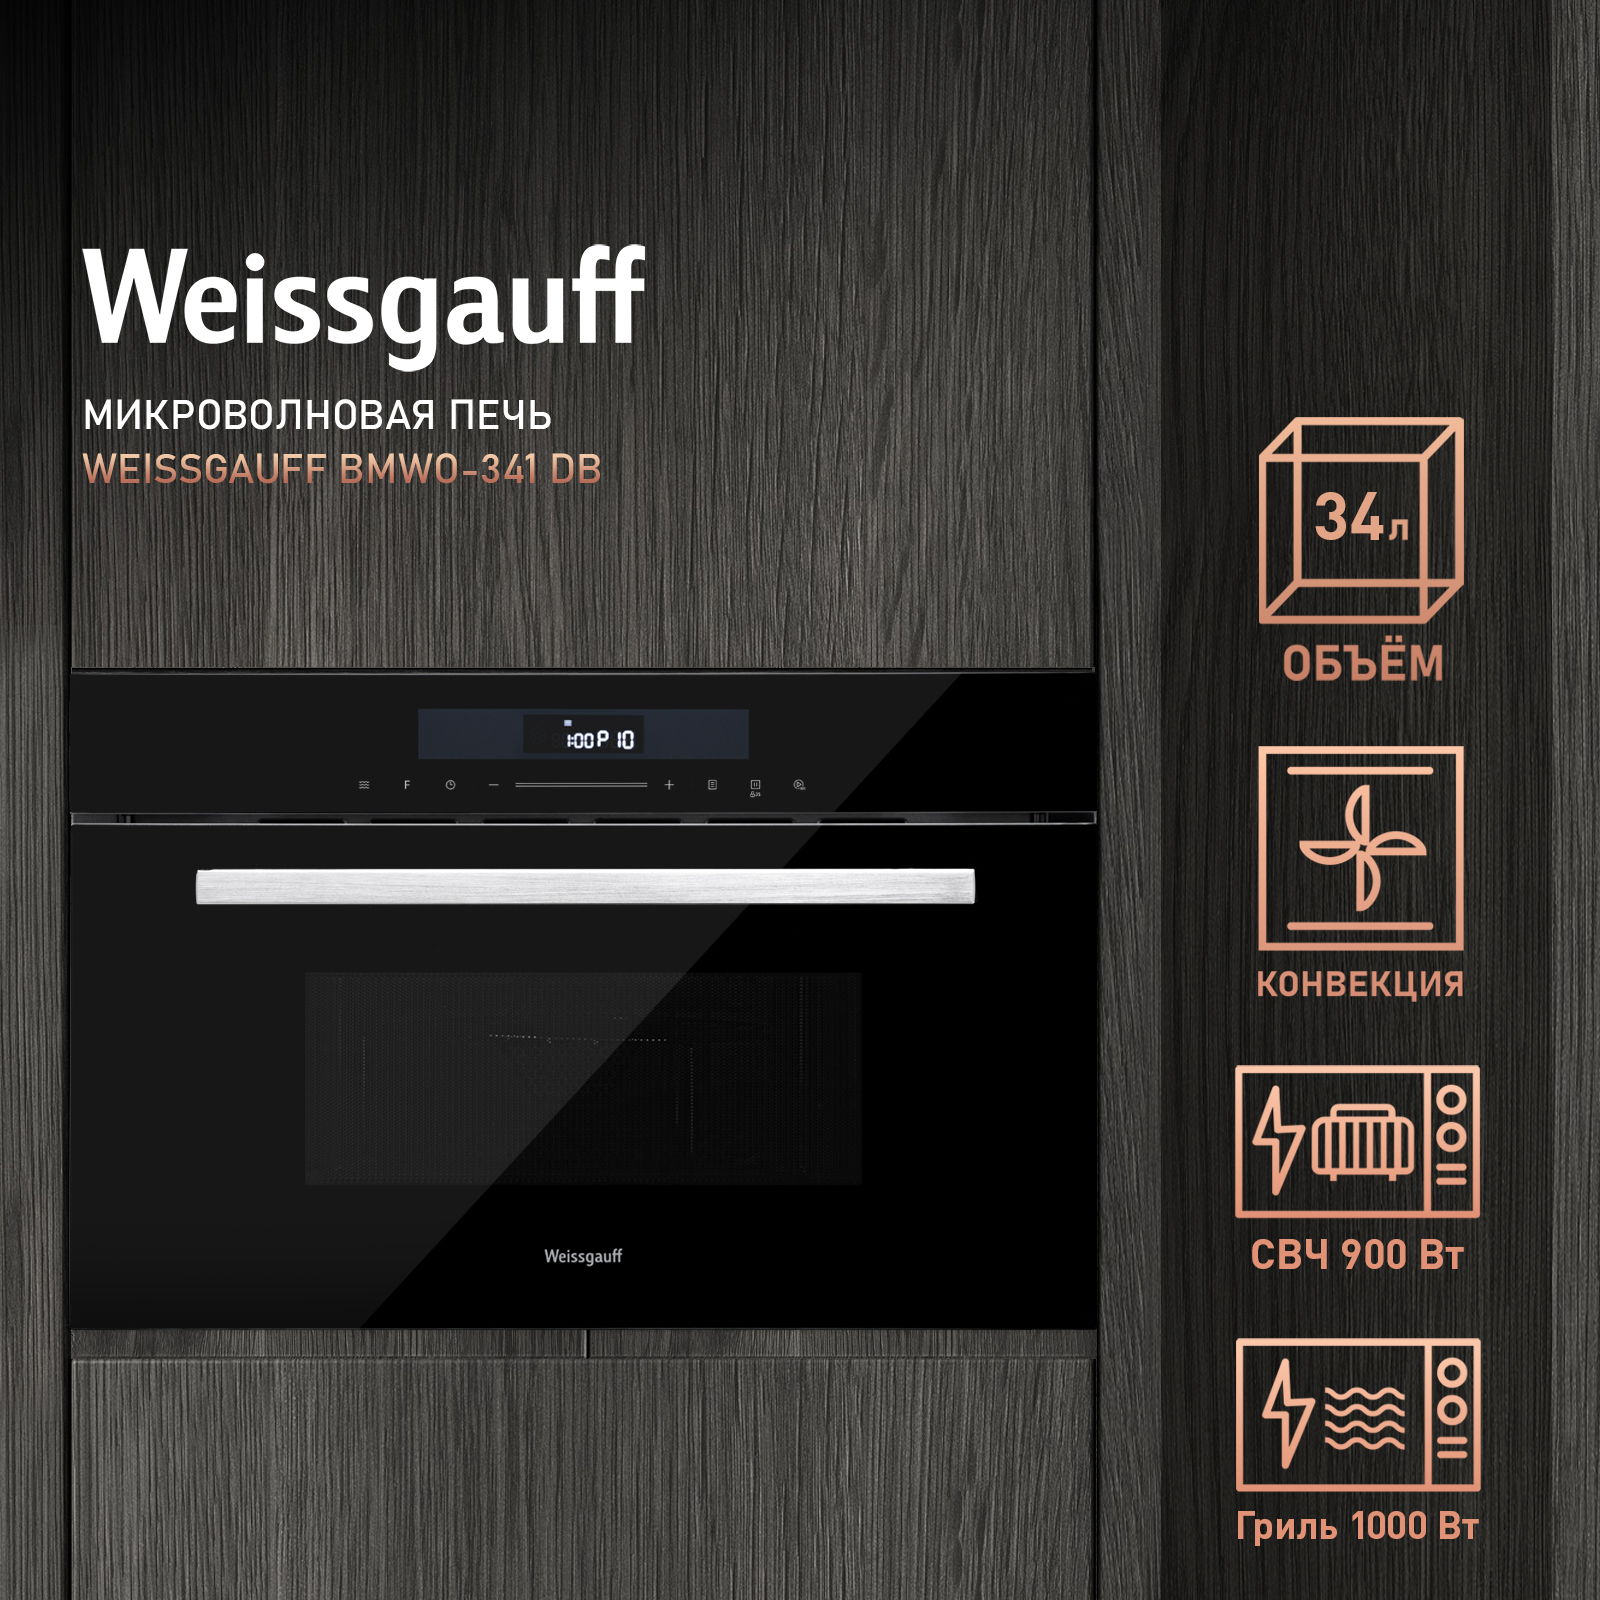 Встраиваемая микроволновая печь Weissgauff BMWO-341 DB Black Edition черная встраиваемая микроволновая печь weissgauff hmt 2017 grill черная